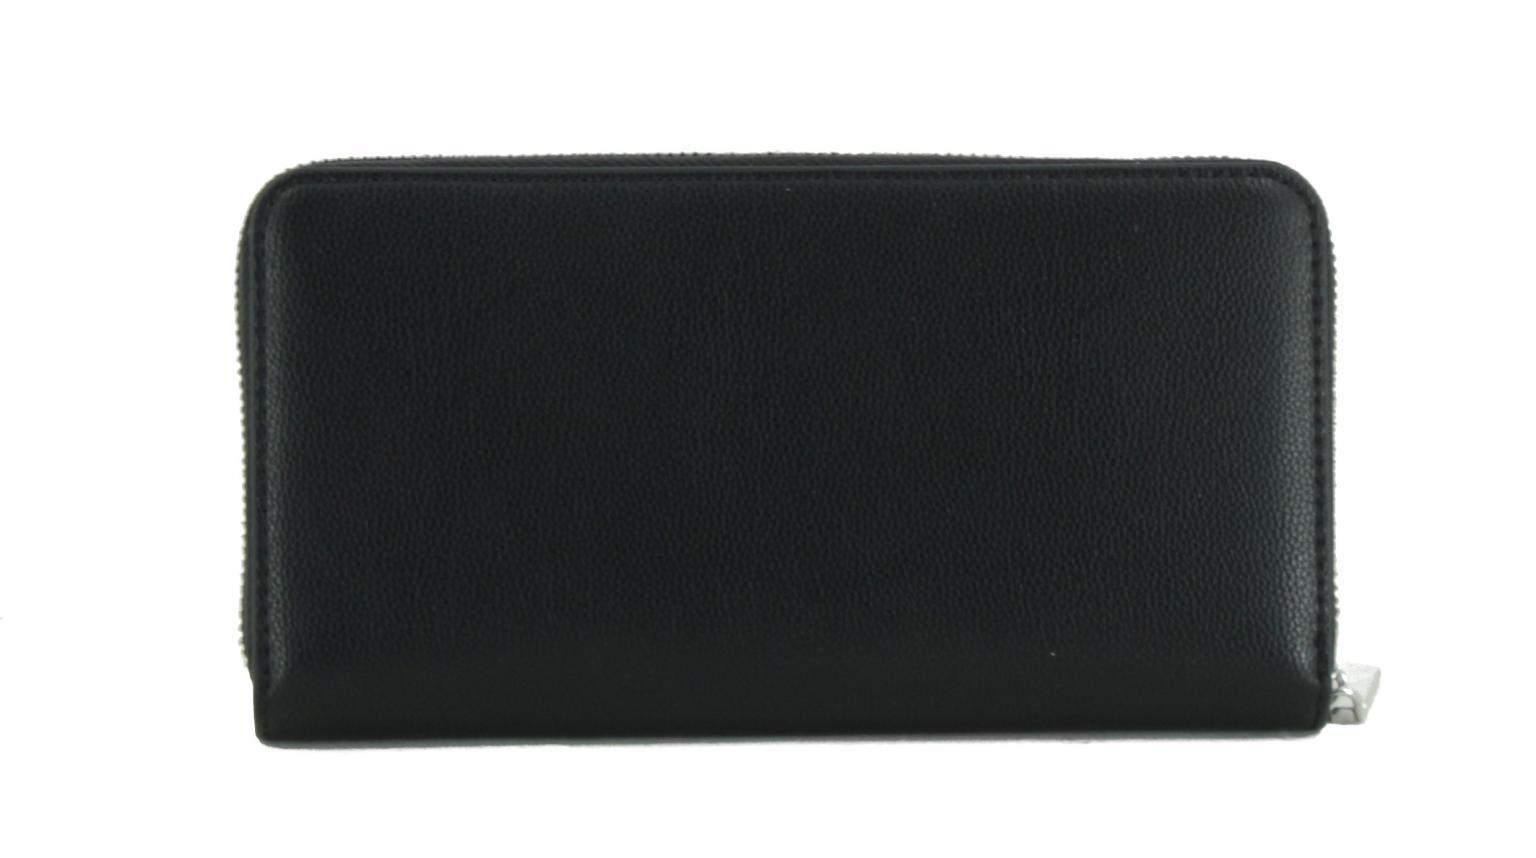 Karten Portmonnaire Calvin Klein Lock Slim Z/A Wallet LG schwarz gold RFID